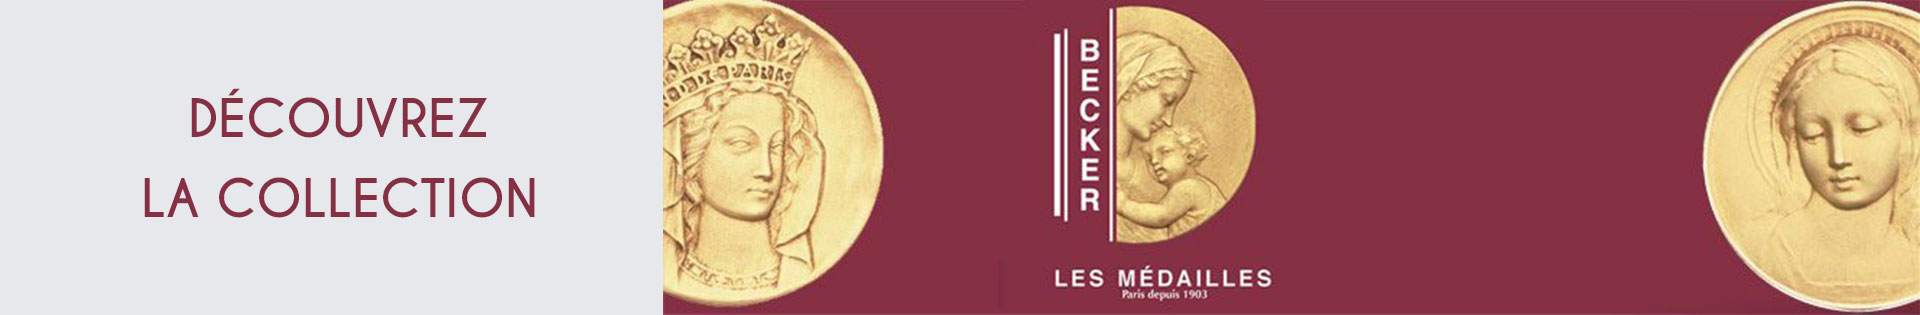 Médaille et symbole - Becker - or 750 millièmes